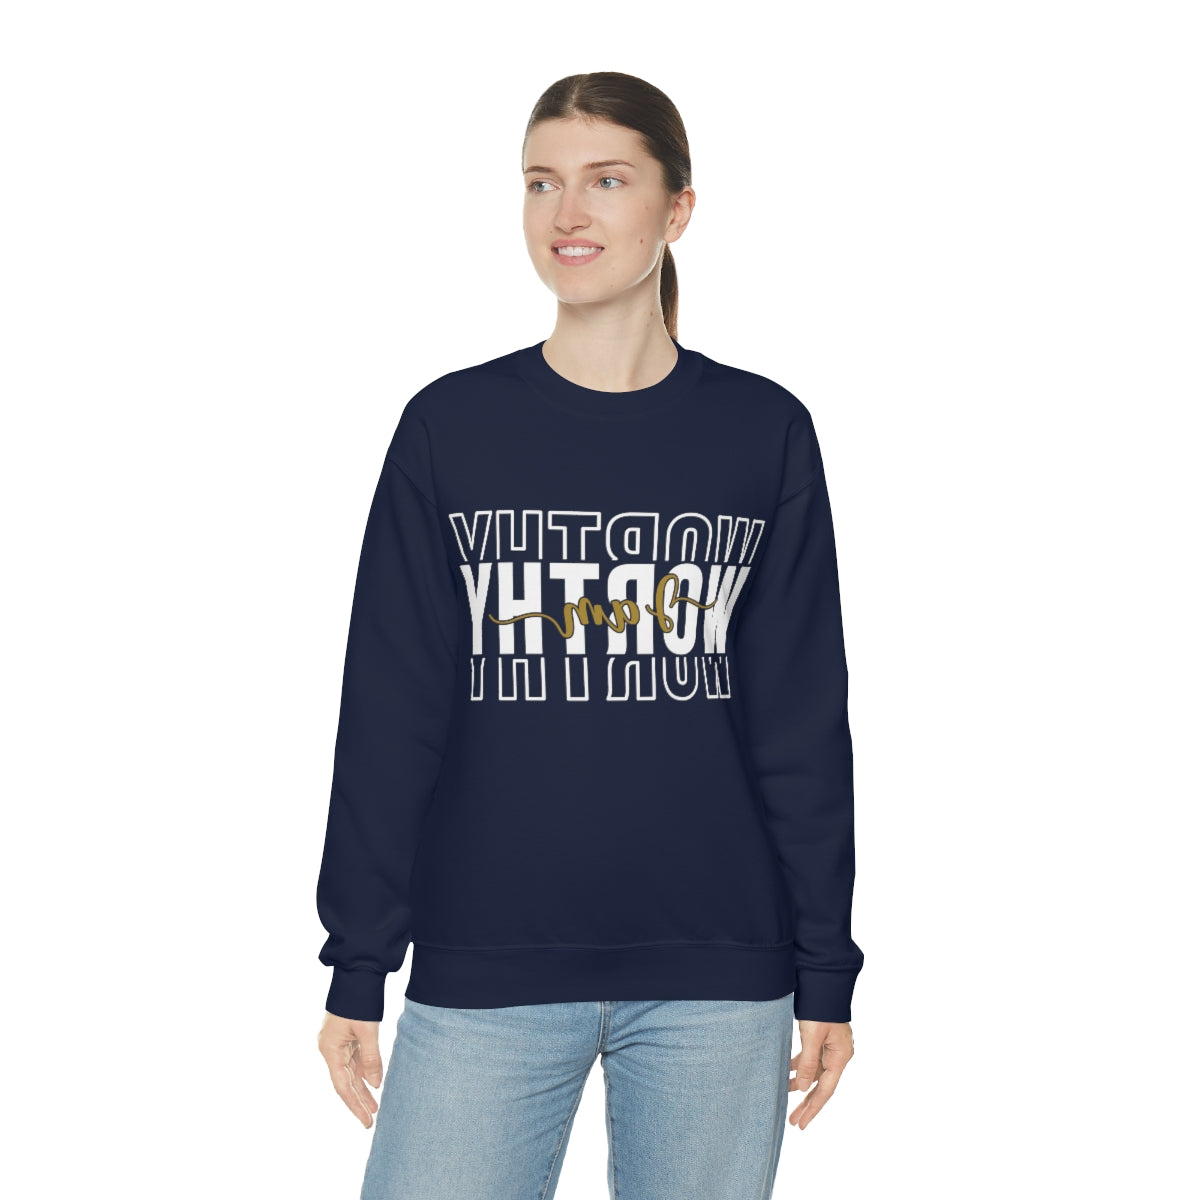 Affirmation Feminist Pro Choice Sweatshirt Unisex  Size – I am Worthy Printify